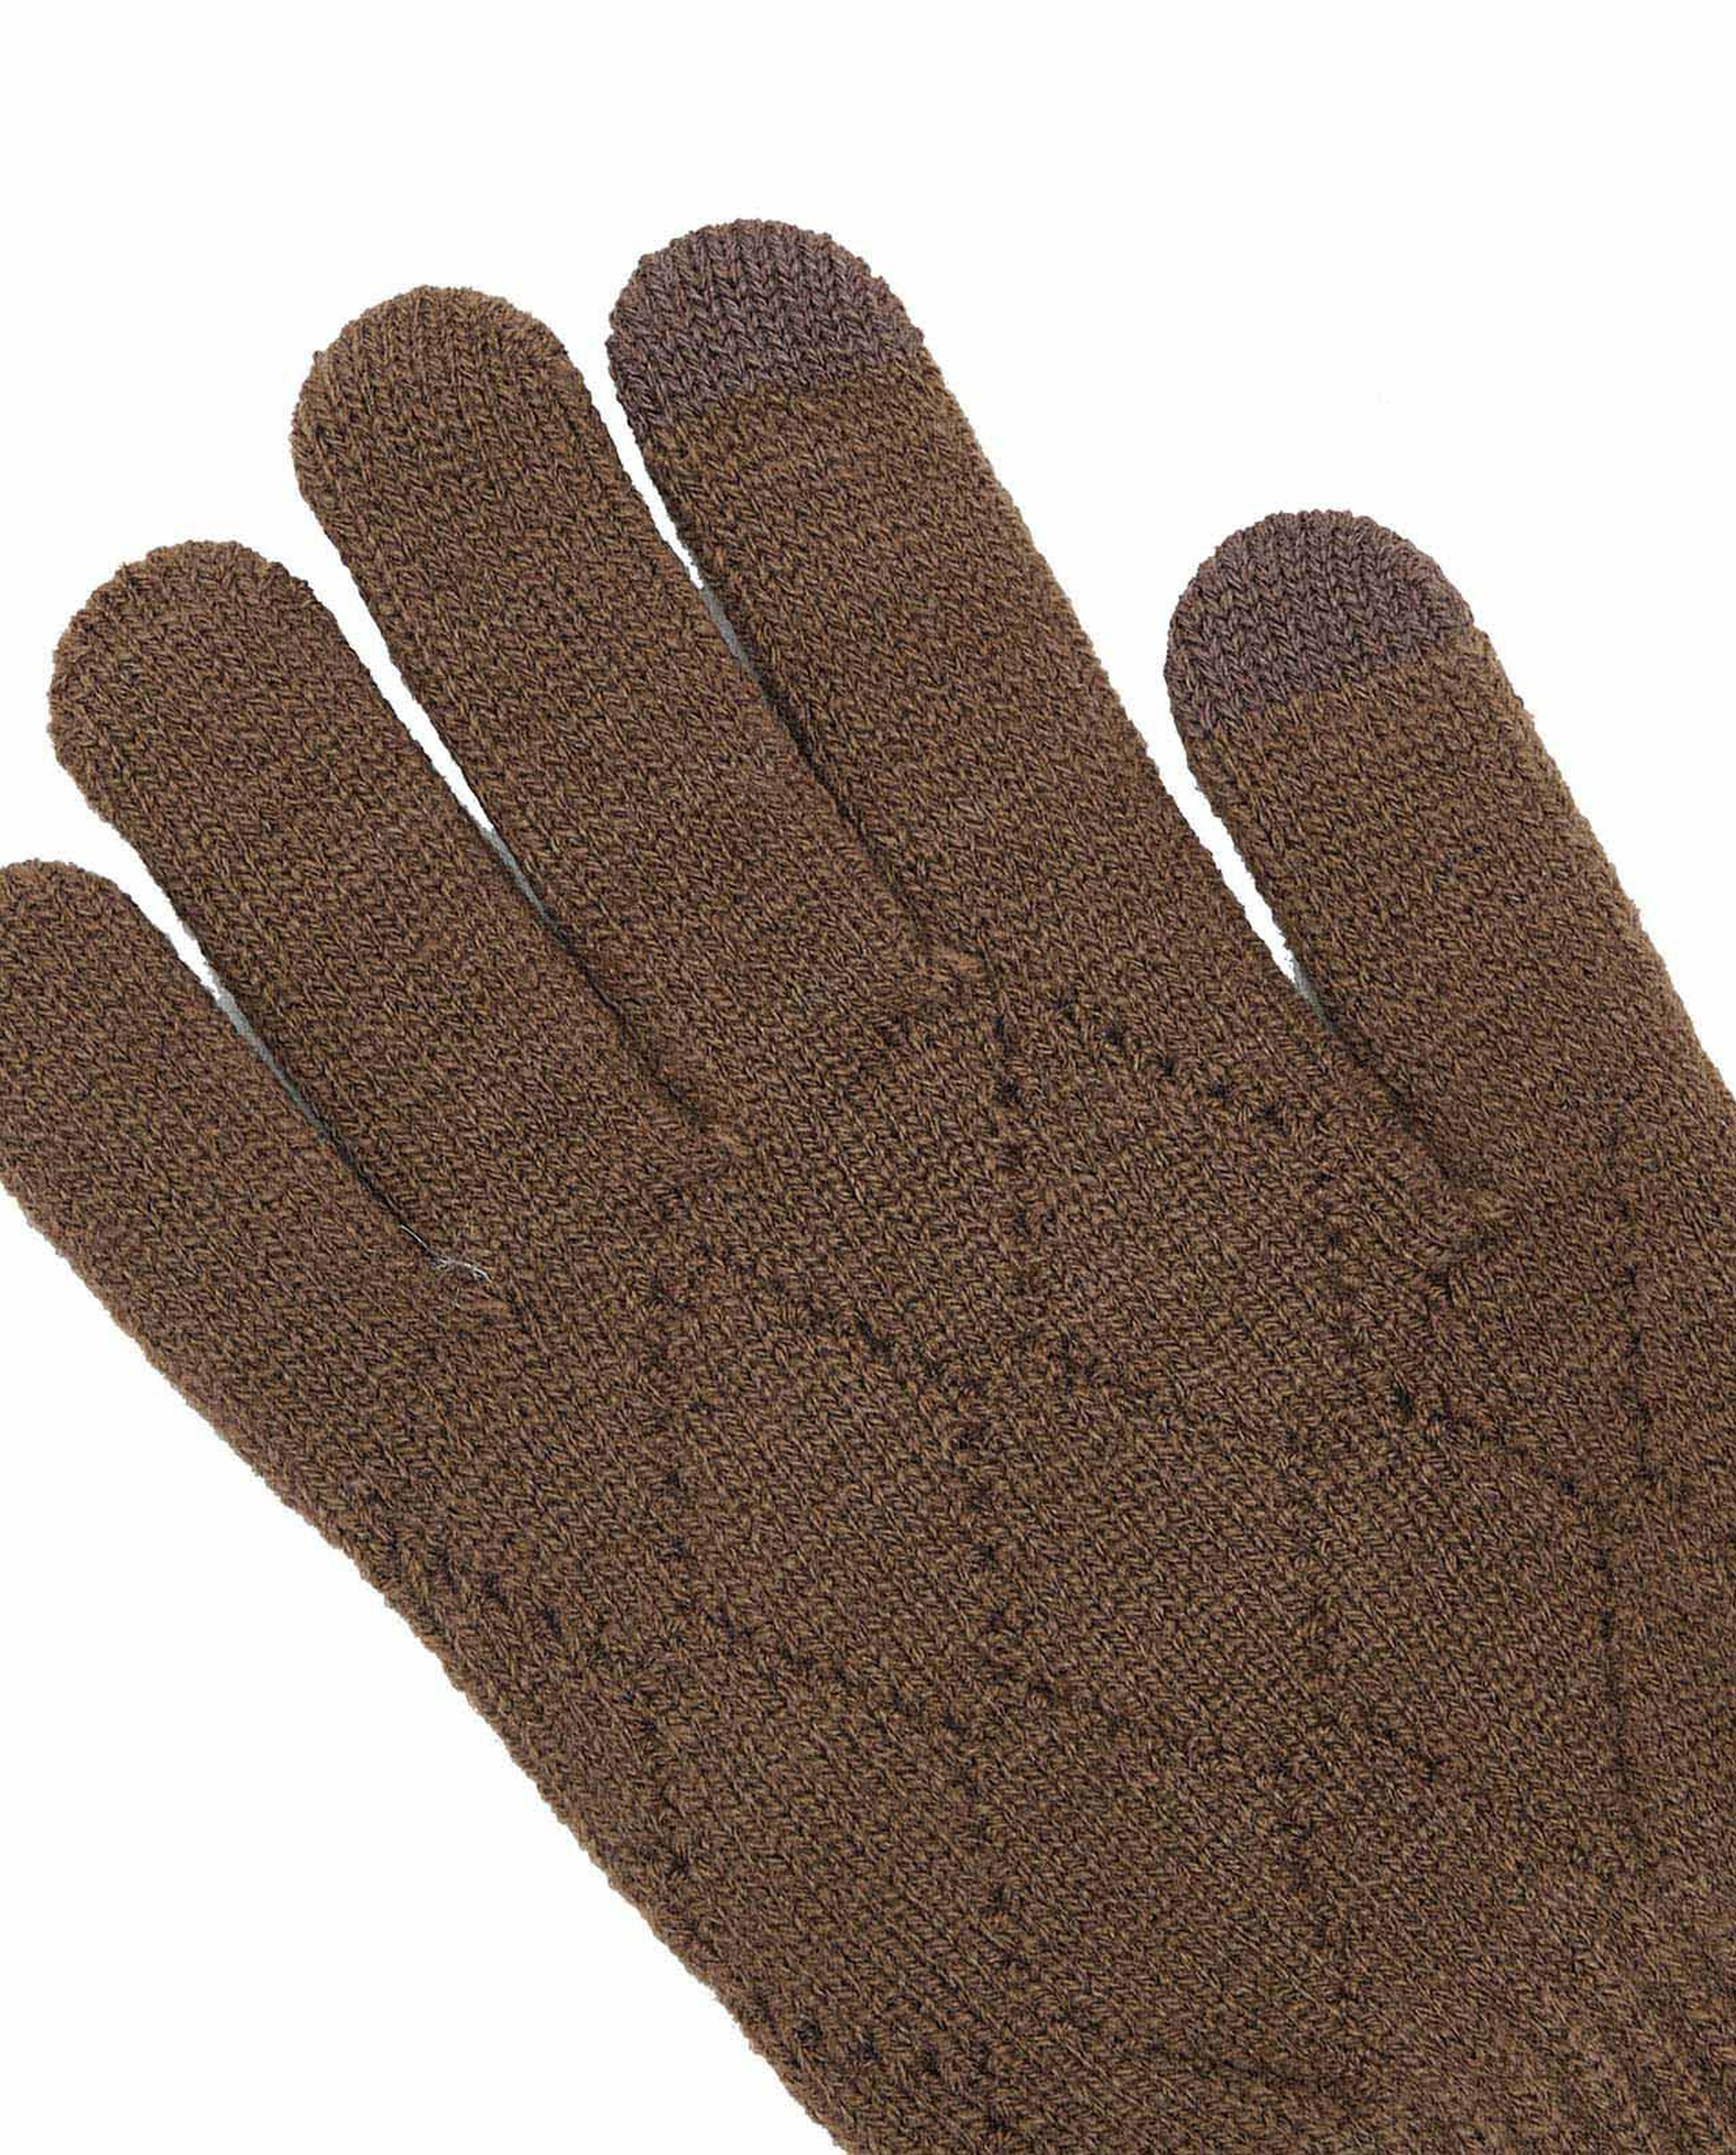 Self Patterned Knit Gloves